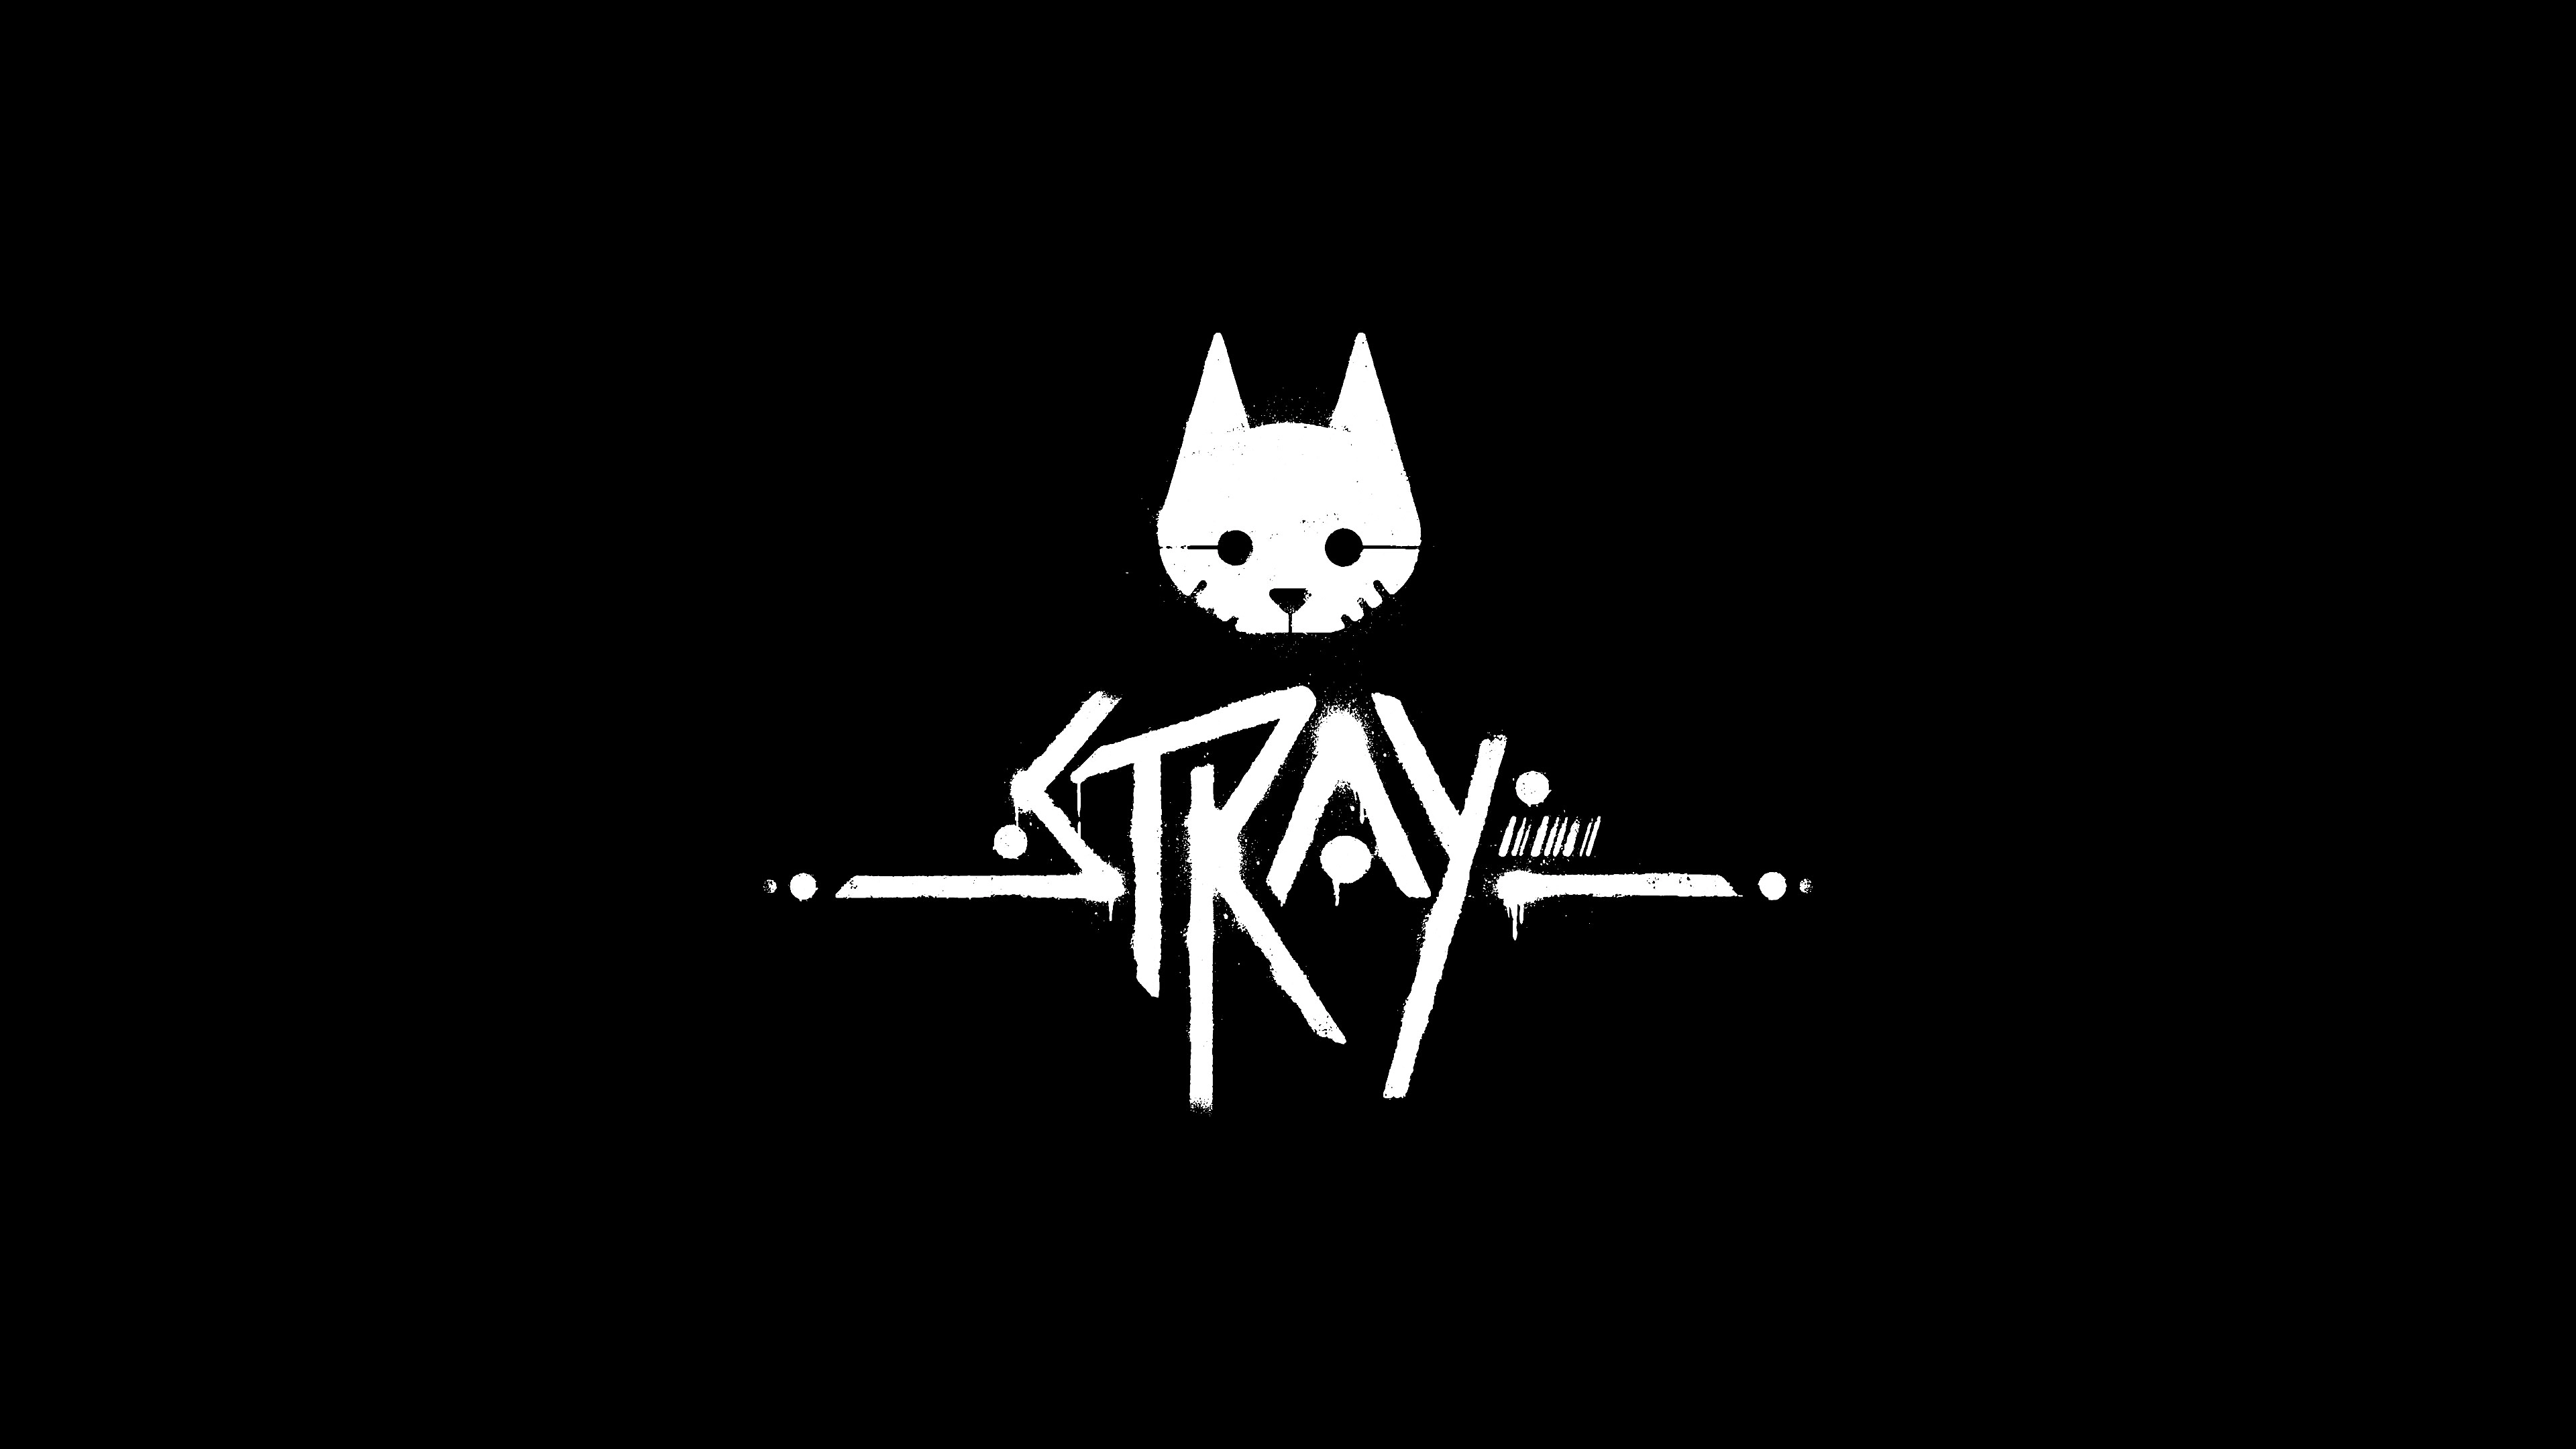 Stray - Análise